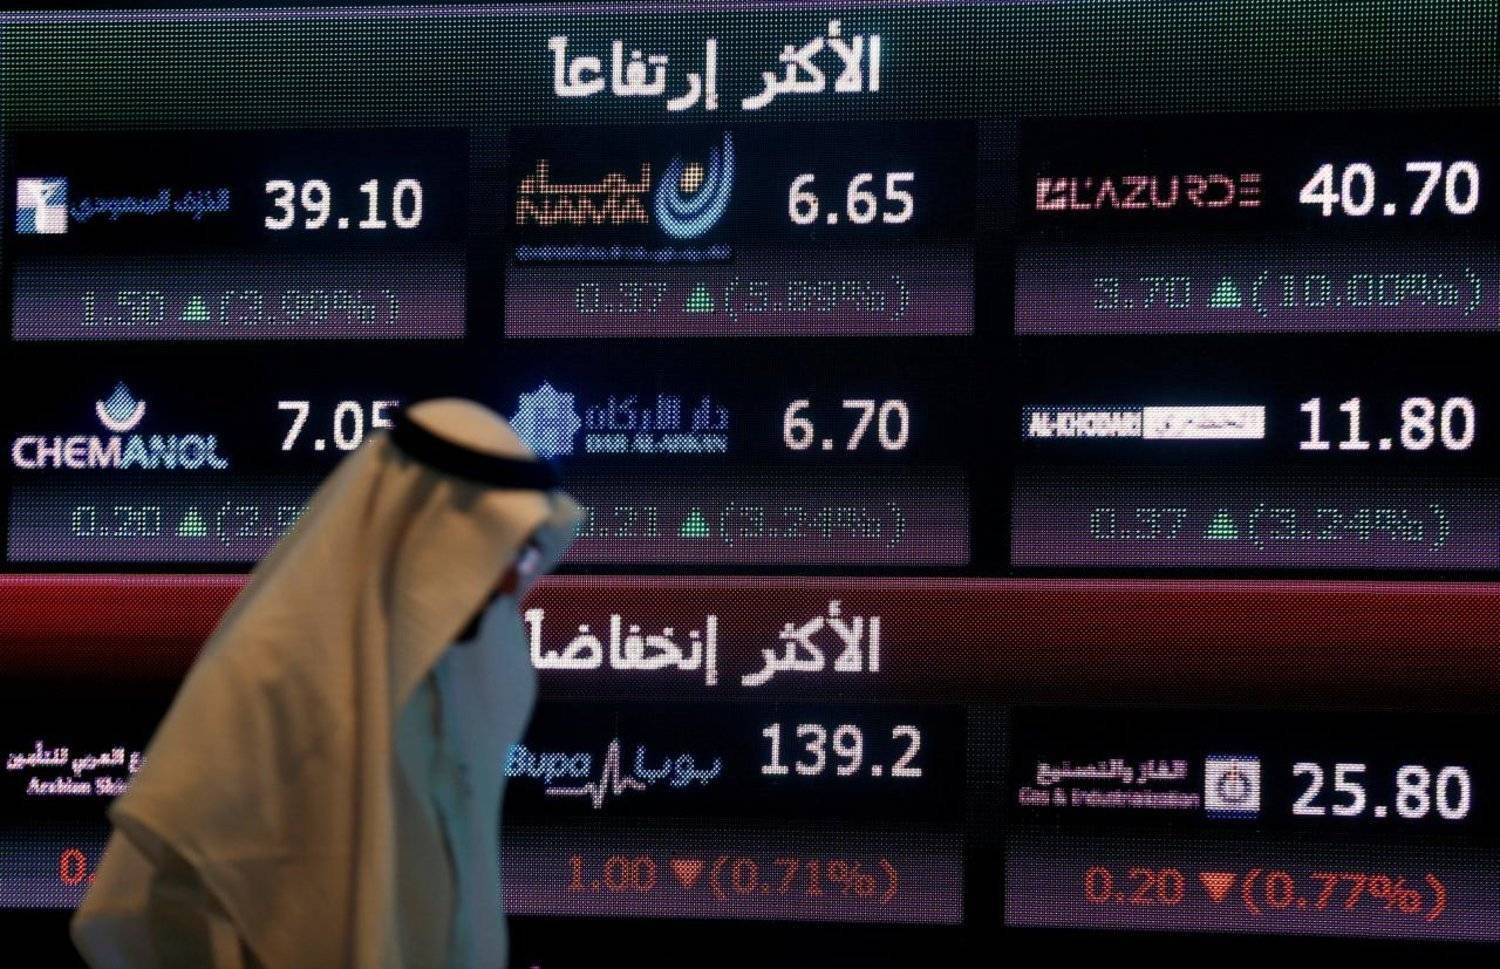 أغلق مؤشر الأسهم السعودية الموازية (نمو) مرتفعاً بتداولات بلغت قيمتها 39 مليون ريال (رويترز)